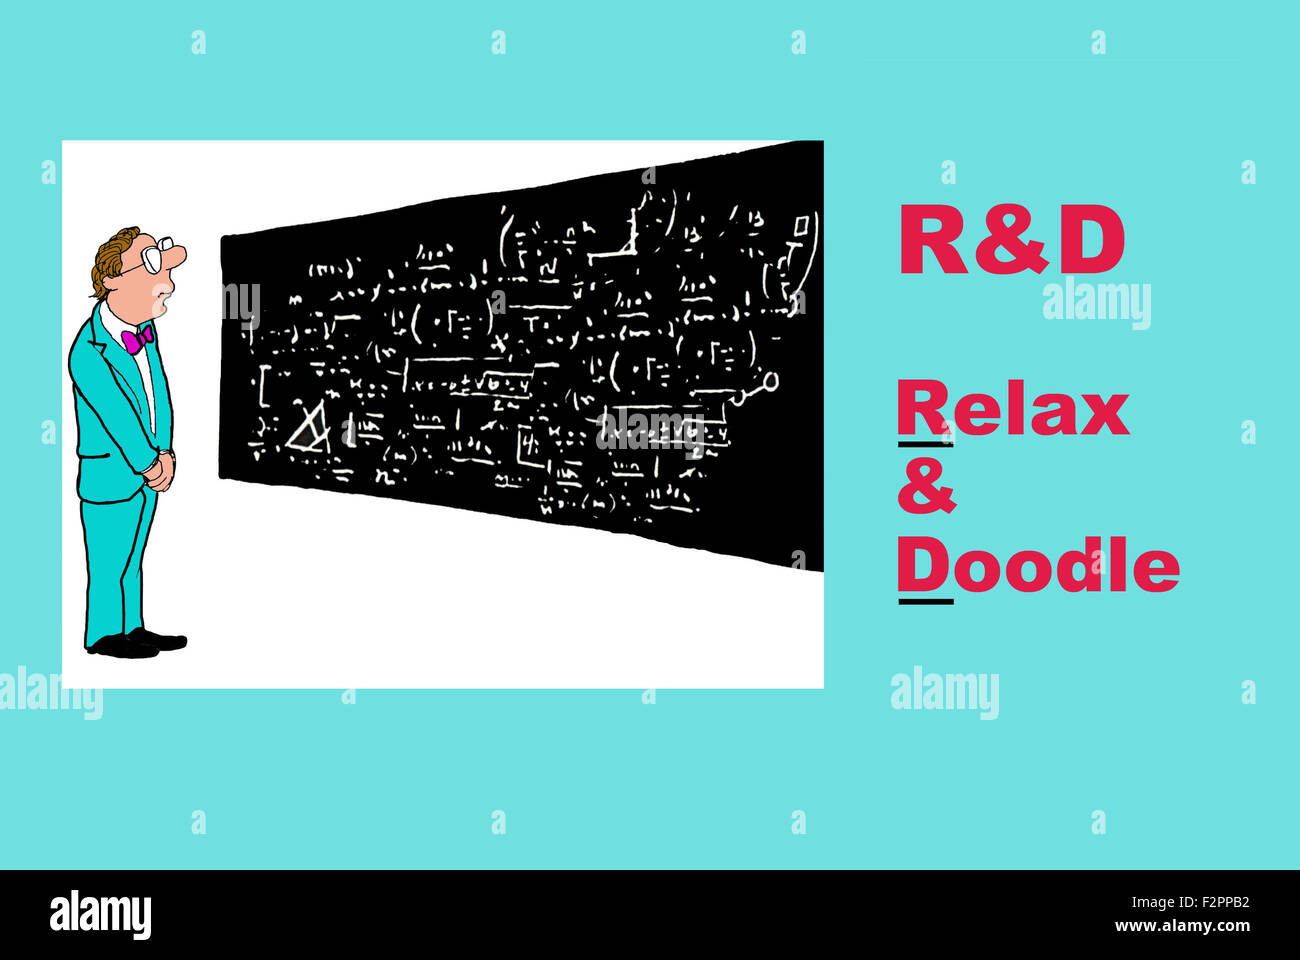 Illustration de l'homme d'affaires à la recherche de formules complexes et de l'acronyme R&D avec le jeu de mots, "Détente & Doodle'. Banque D'Images